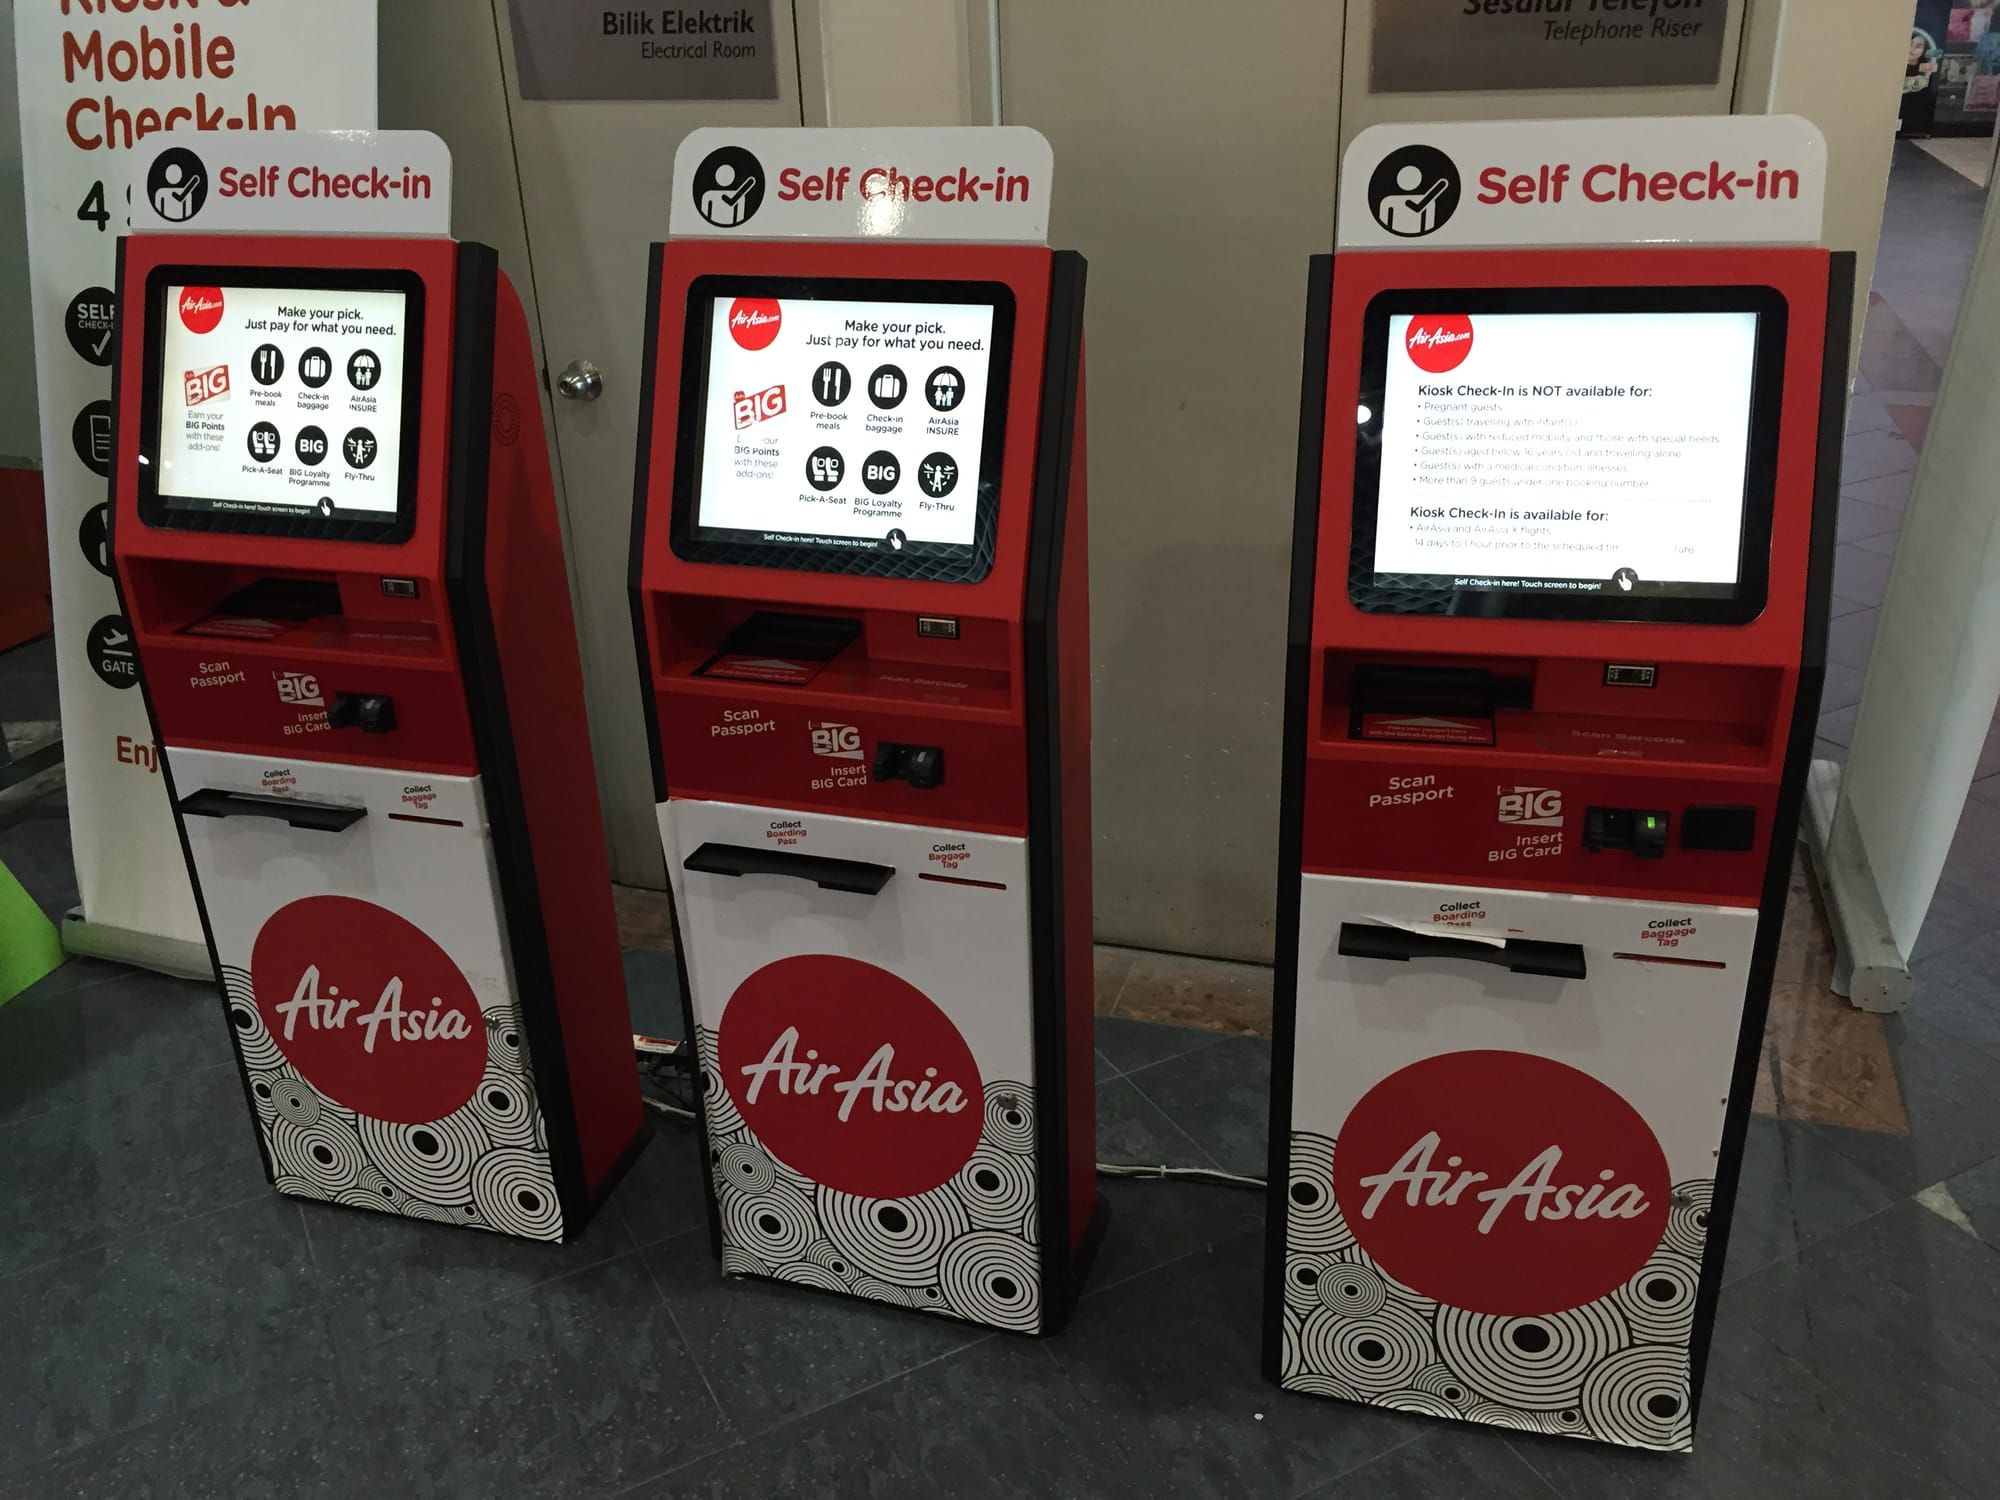 Photo by Author — Air Asia check-in — what a shambles! An IT failure?